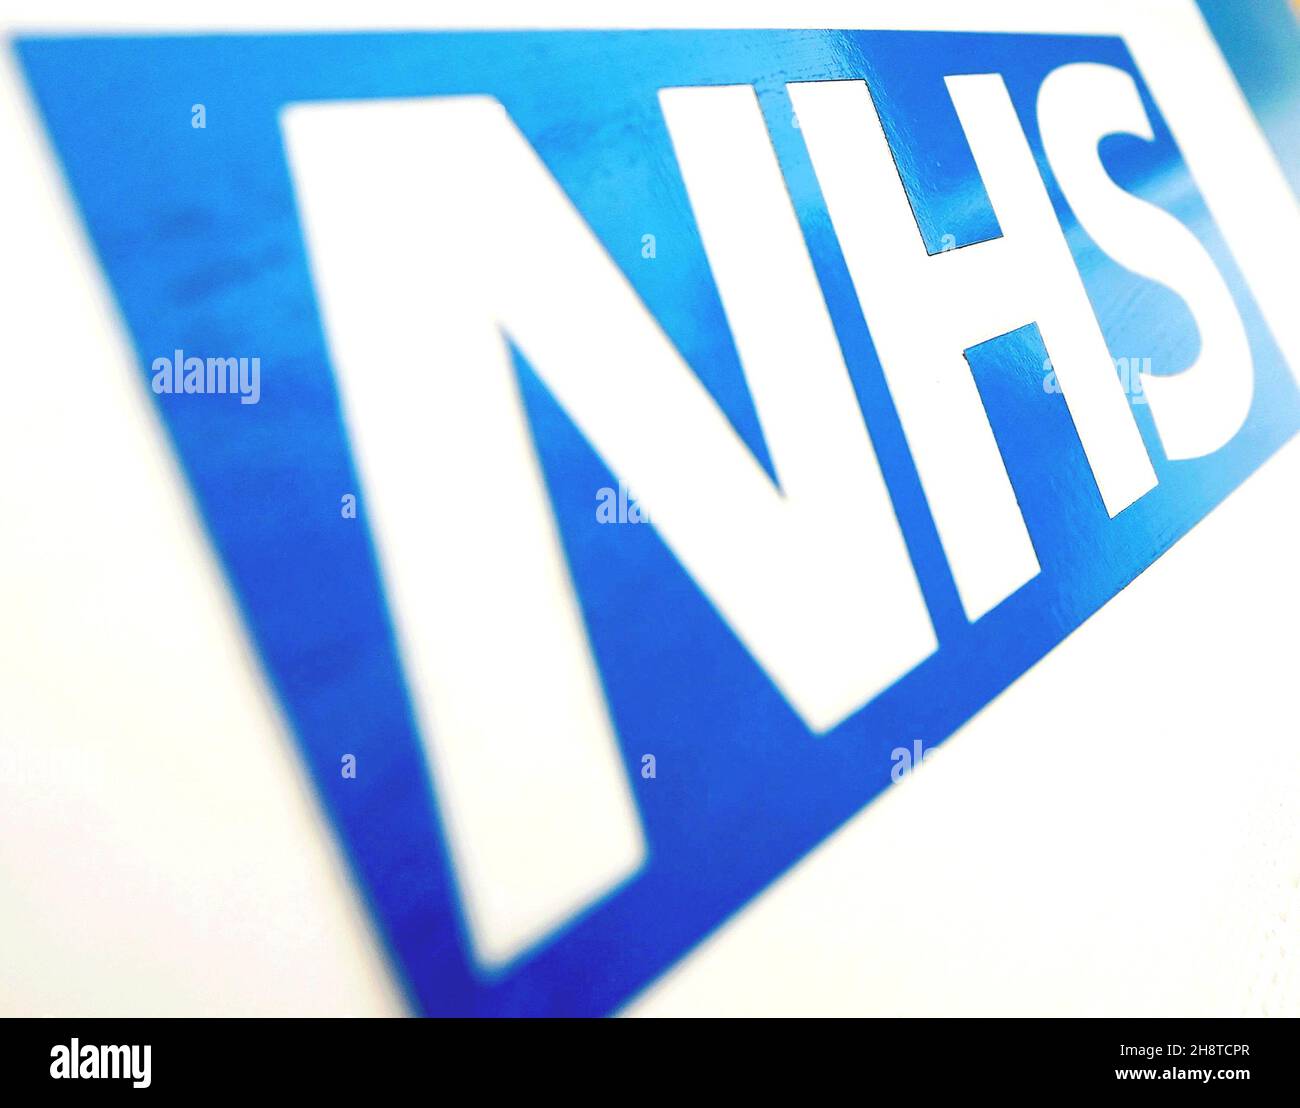 Photo du dossier datée du 06/11/10 du logo NHS.Près des deux tiers des Écossais pensent qu'il devrait y avoir plus de financement pour les services de santé mentale dans le pays, a constaté un sondage. Banque D'Images